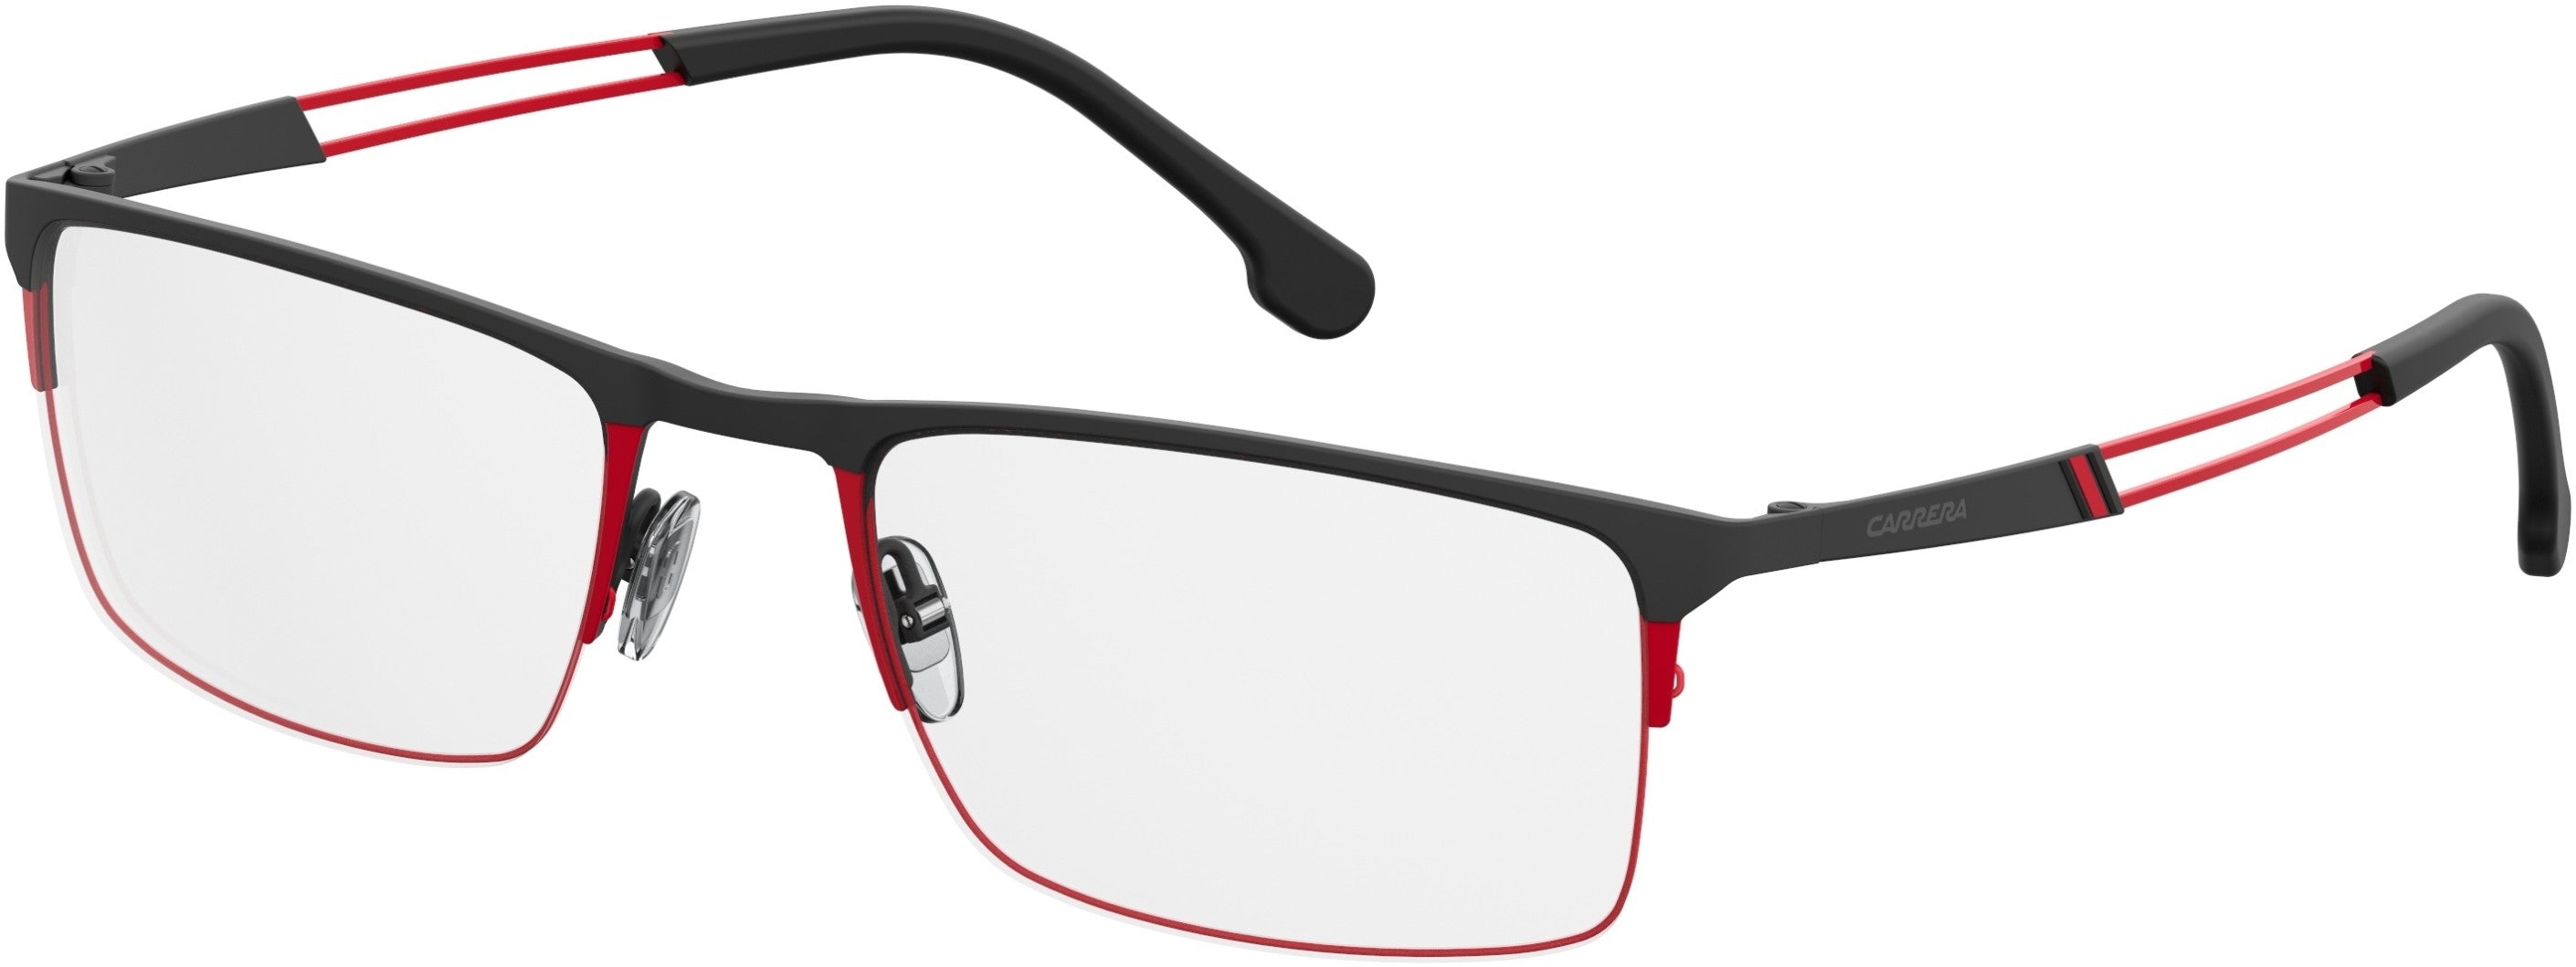  Carrera 8832 Rectangular Eyeglasses 0OIT-0OIT  Black Redgd (00 Demo Lens)